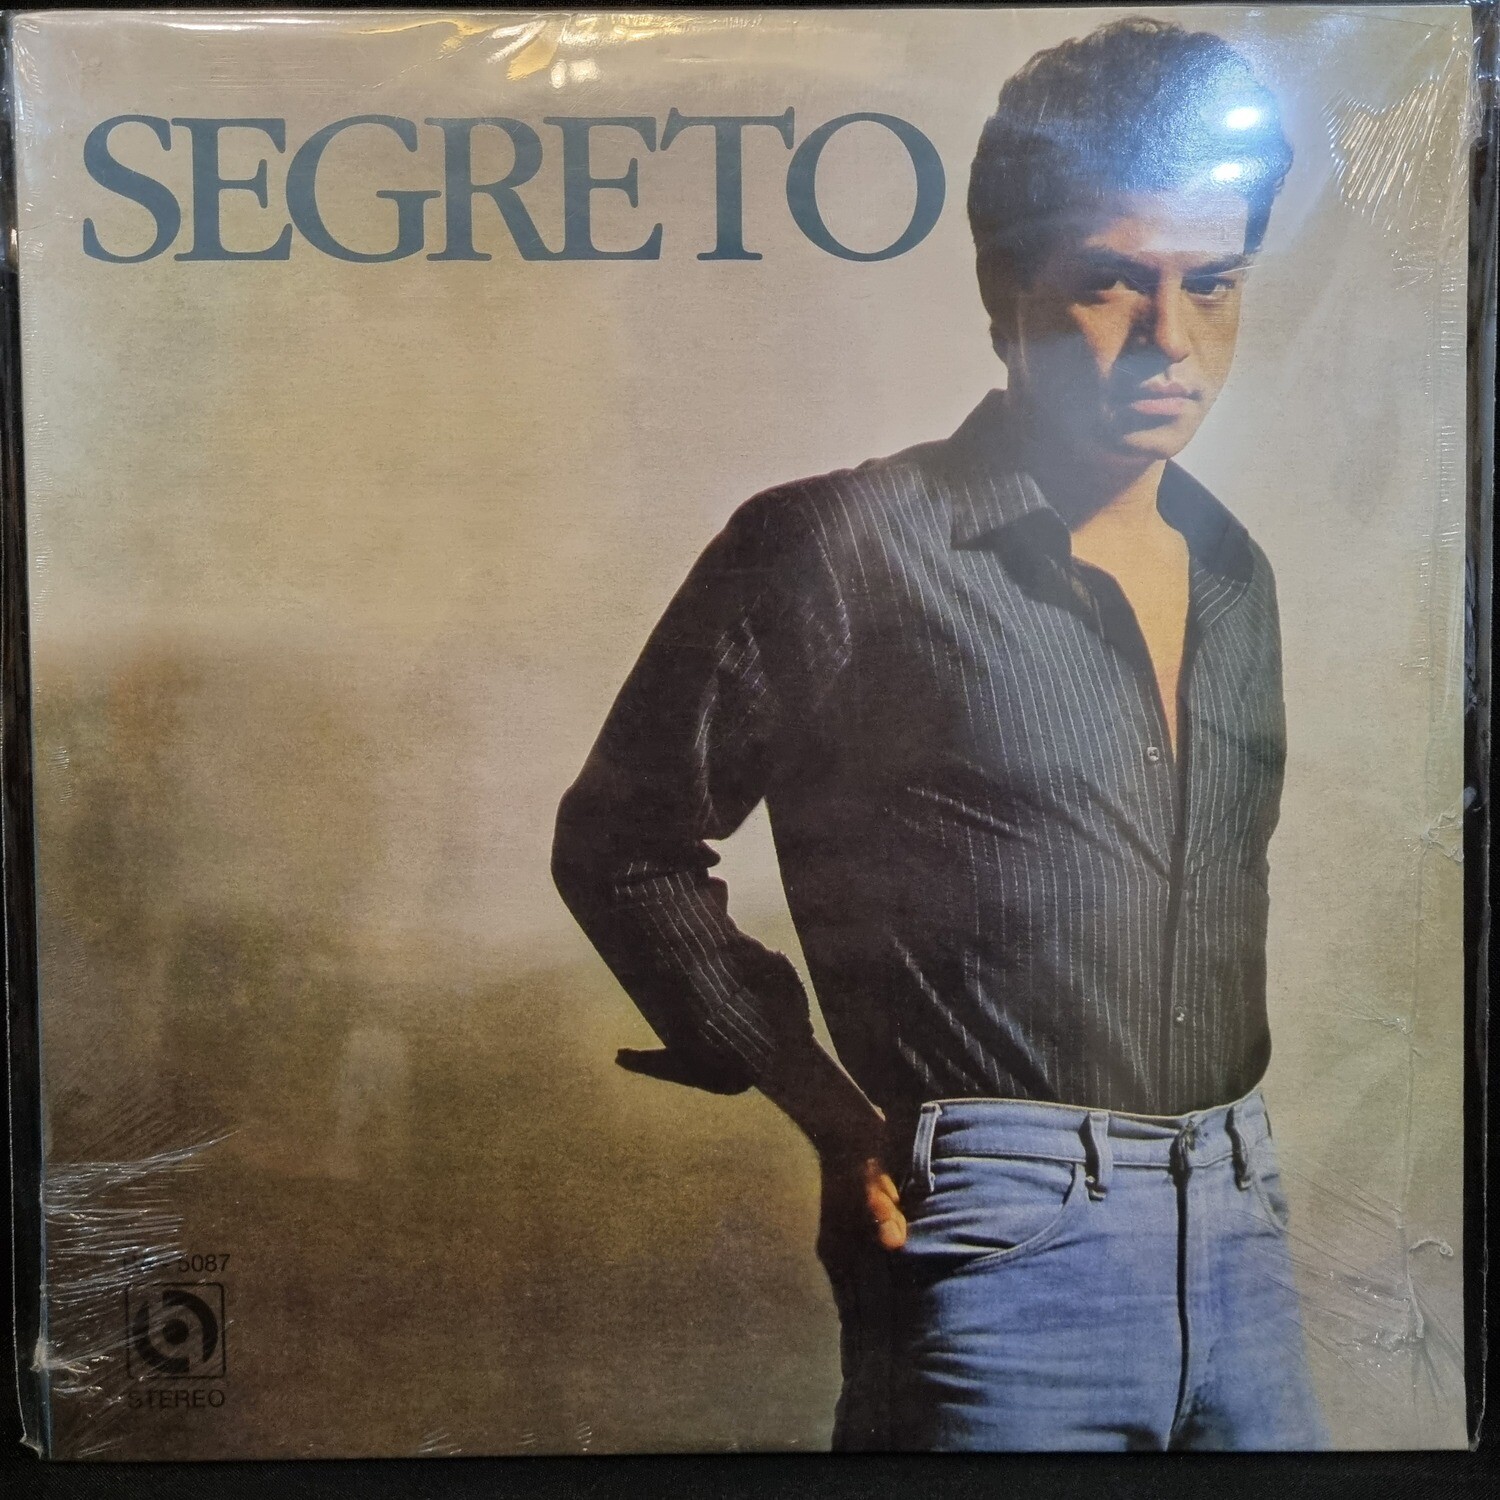 Ric Segreto- Segreto